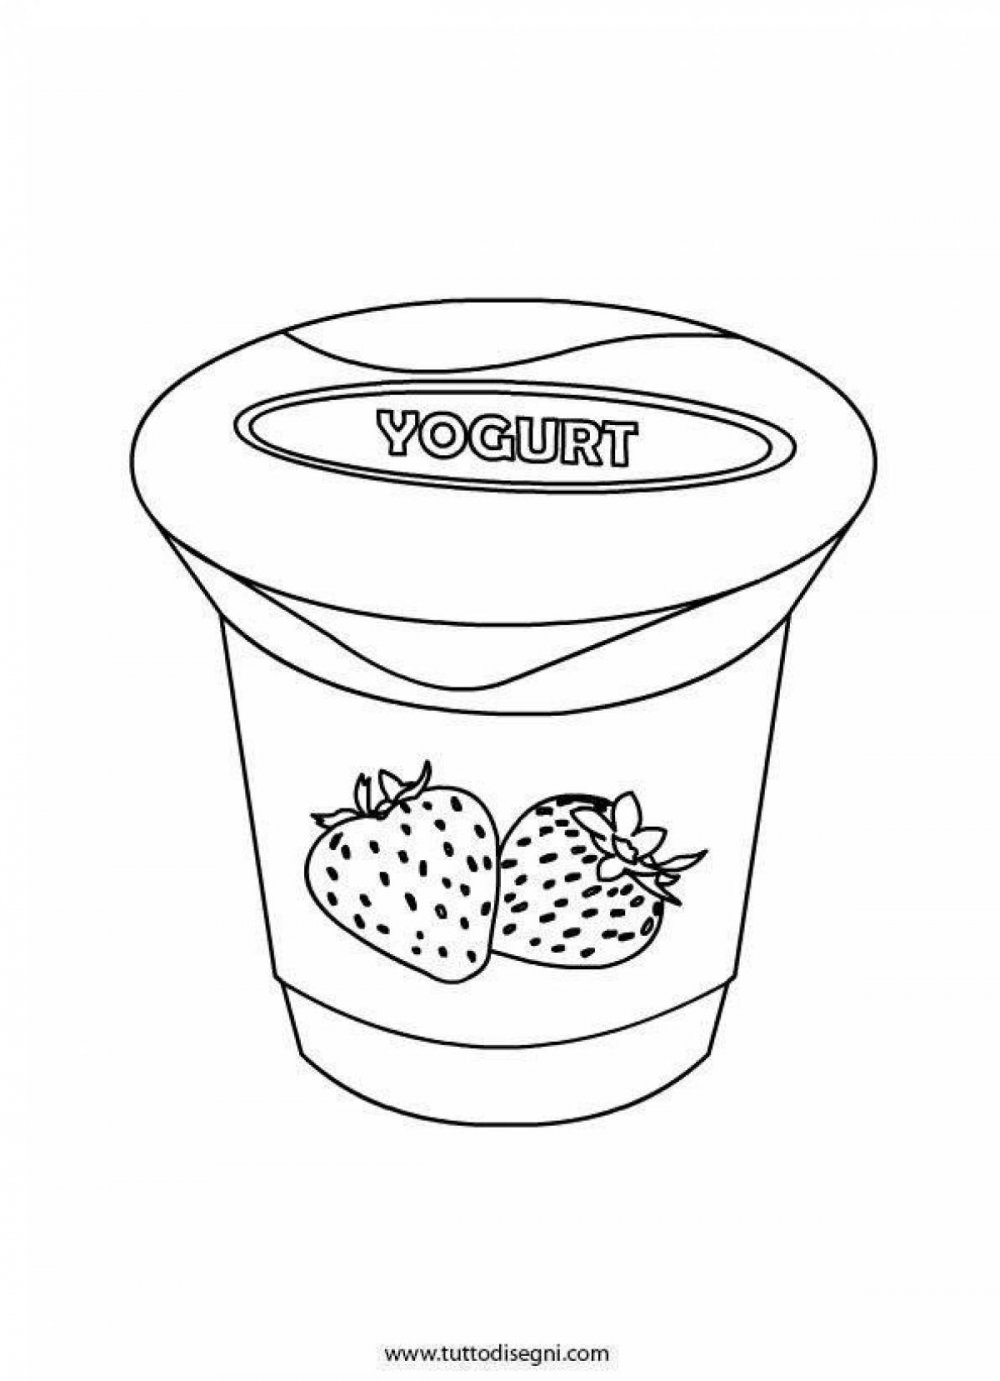 Раскраска буква йогурт